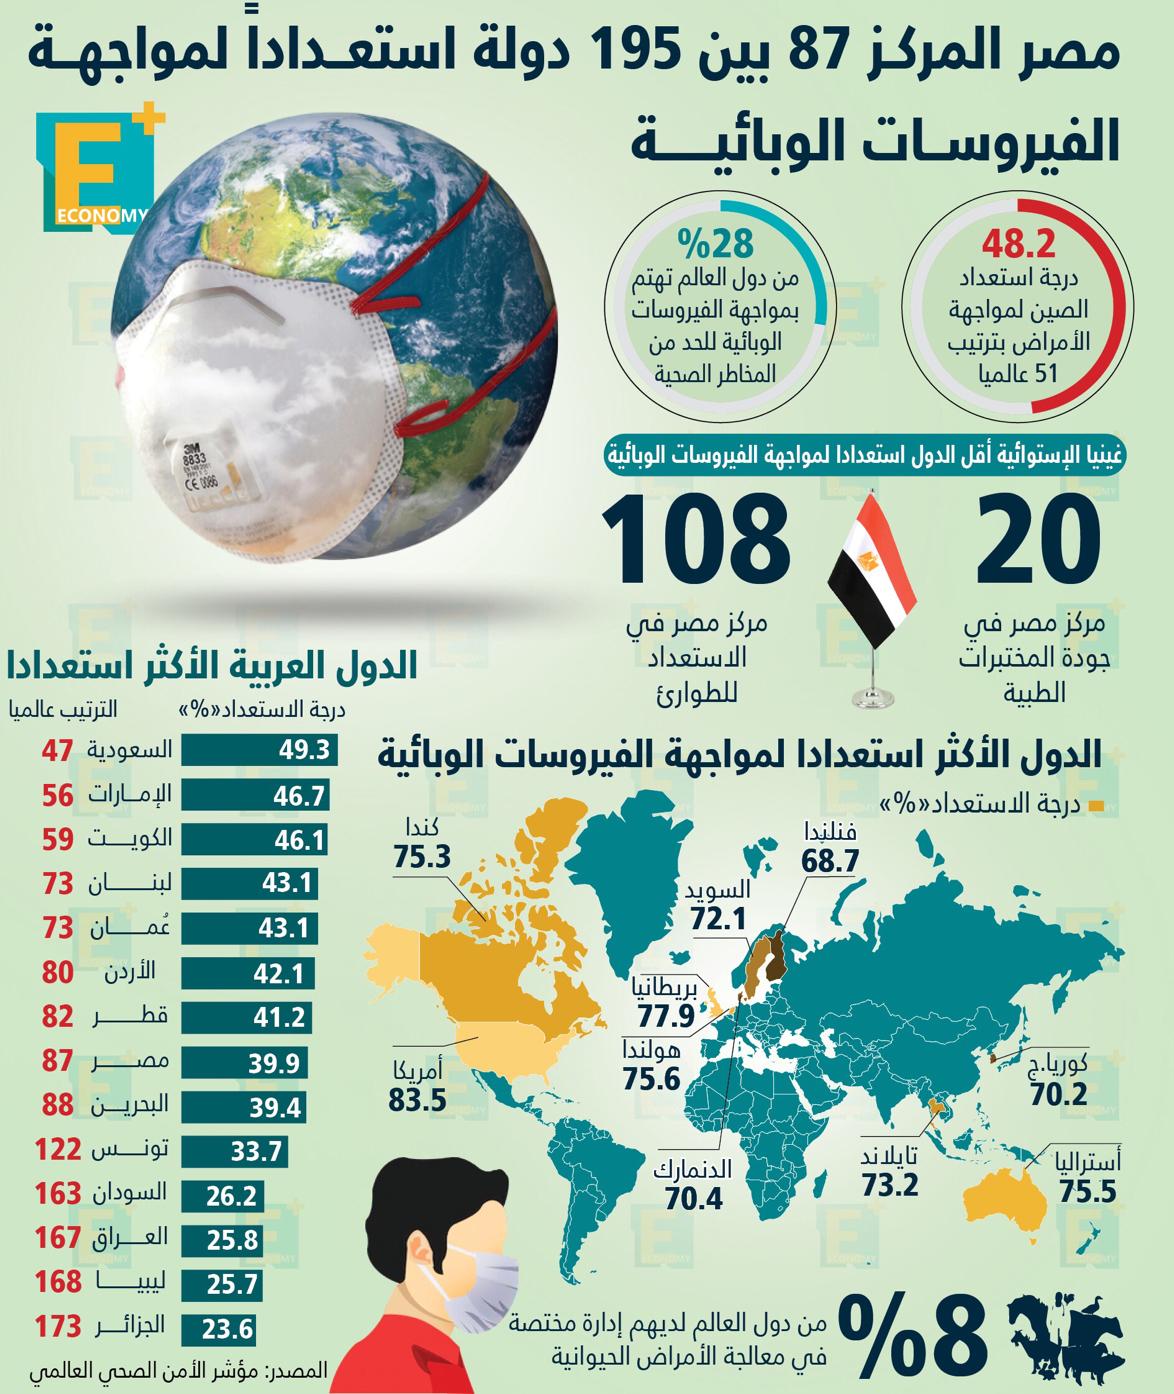 مصر المركز 87 بين 196 دولة استعدادًا لمواجهة الفيروسات الوبائية